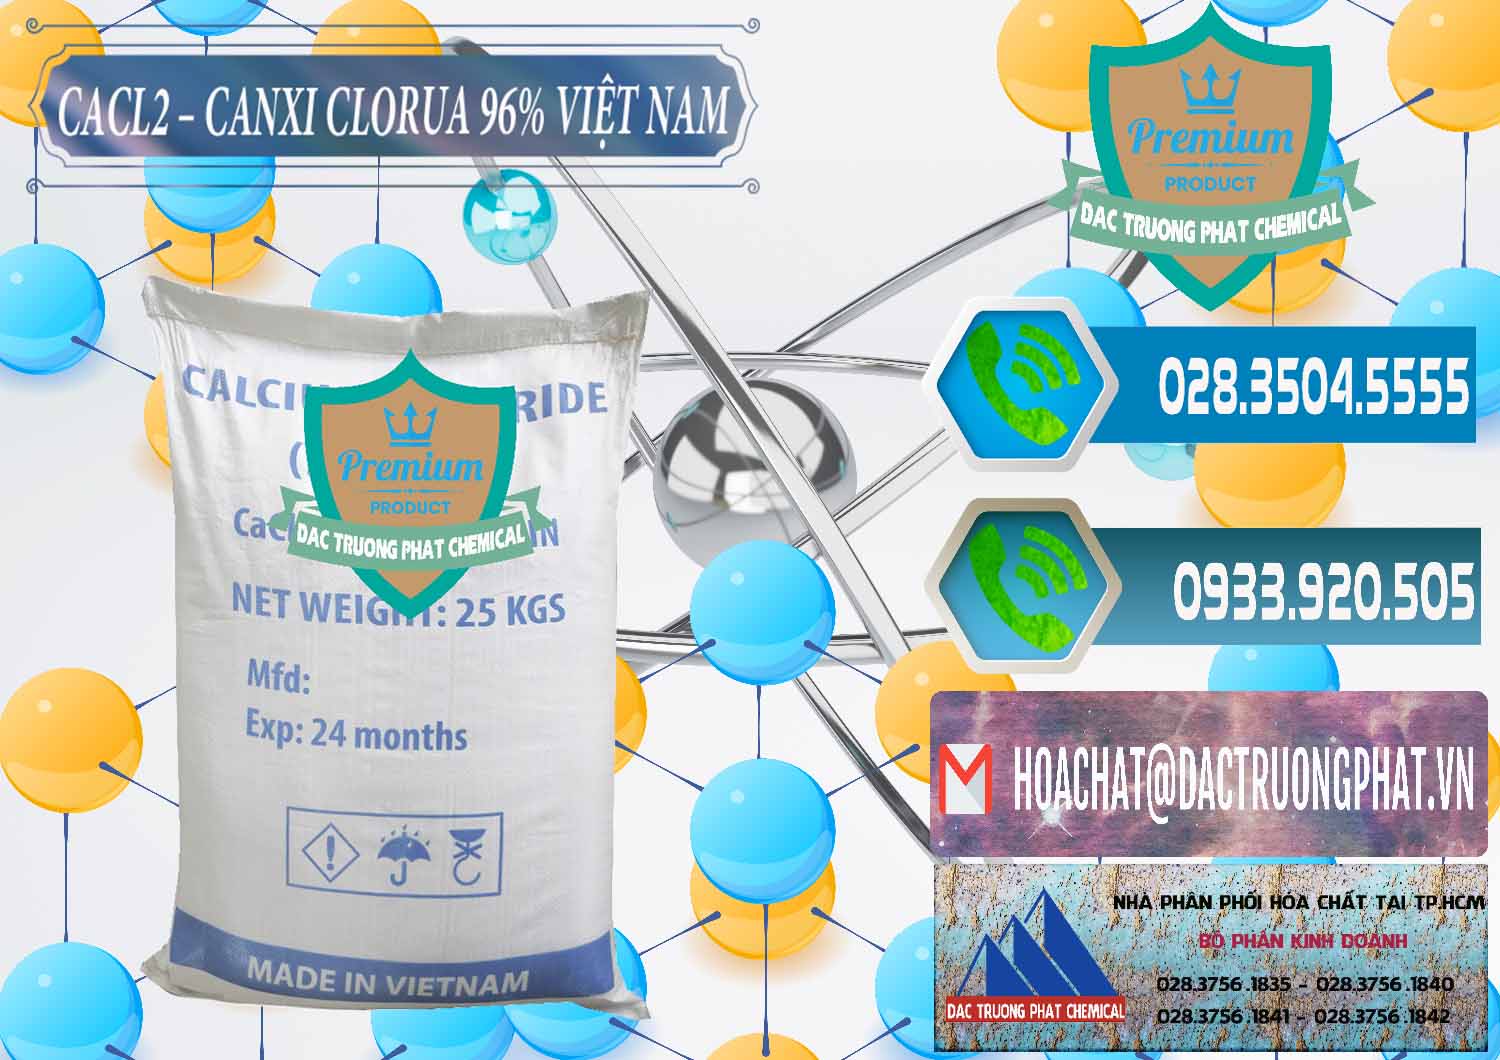 Đơn vị cung ứng - phân phối CaCl2 – Canxi Clorua 96% Việt Nam - 0236 - Chuyên cung cấp & phân phối hóa chất tại TP.HCM - congtyhoachat.net